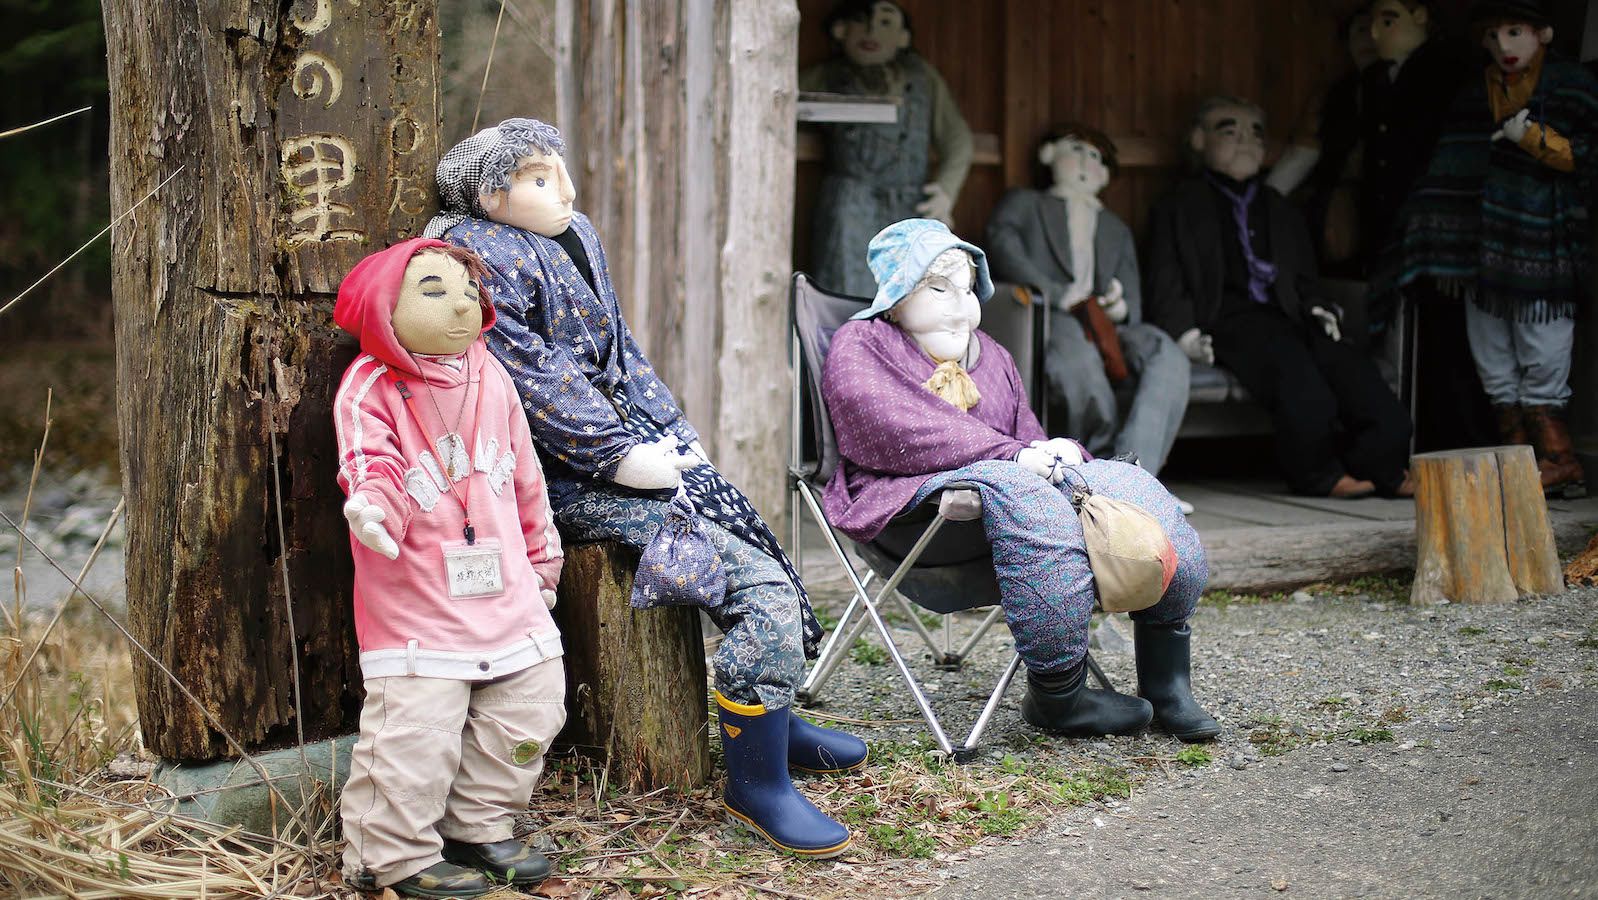 Ngôi làng búp bê Nhật Bản: Trải nghiệm thú vị nhưng phản ánh hiện trạng đáng buồn - Ảnh 2.